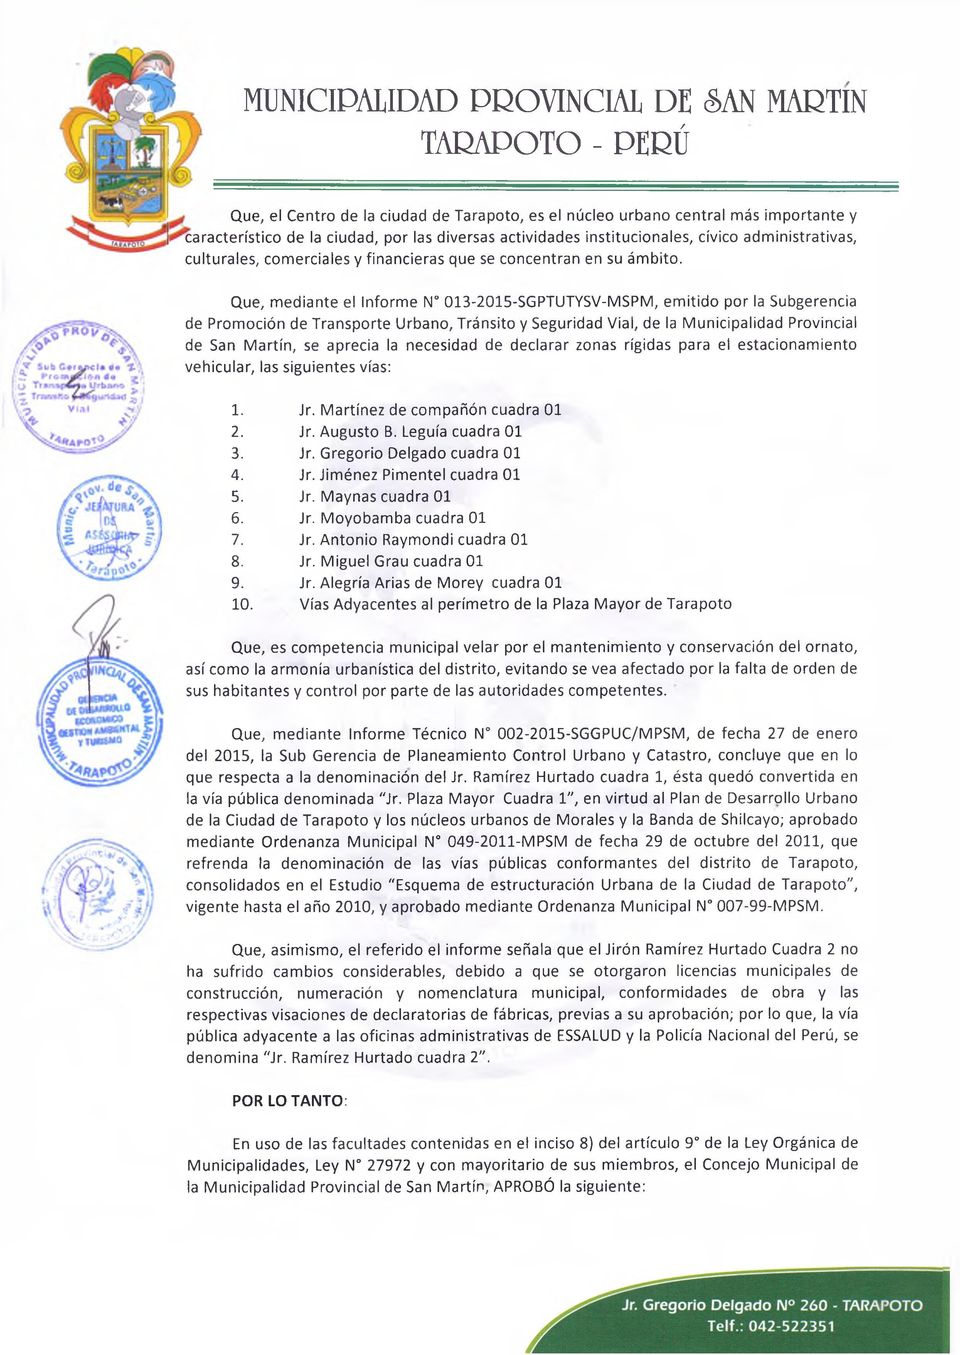 Que, mediante el Informe N 013-2015-SGPTUTYSV-MSPM, emitido por la Subgerencia de Promoción de Transporte Urbano, Tránsito y Seguridad Vial, de la Municipalidad Provincial de San Martín, se aprecia